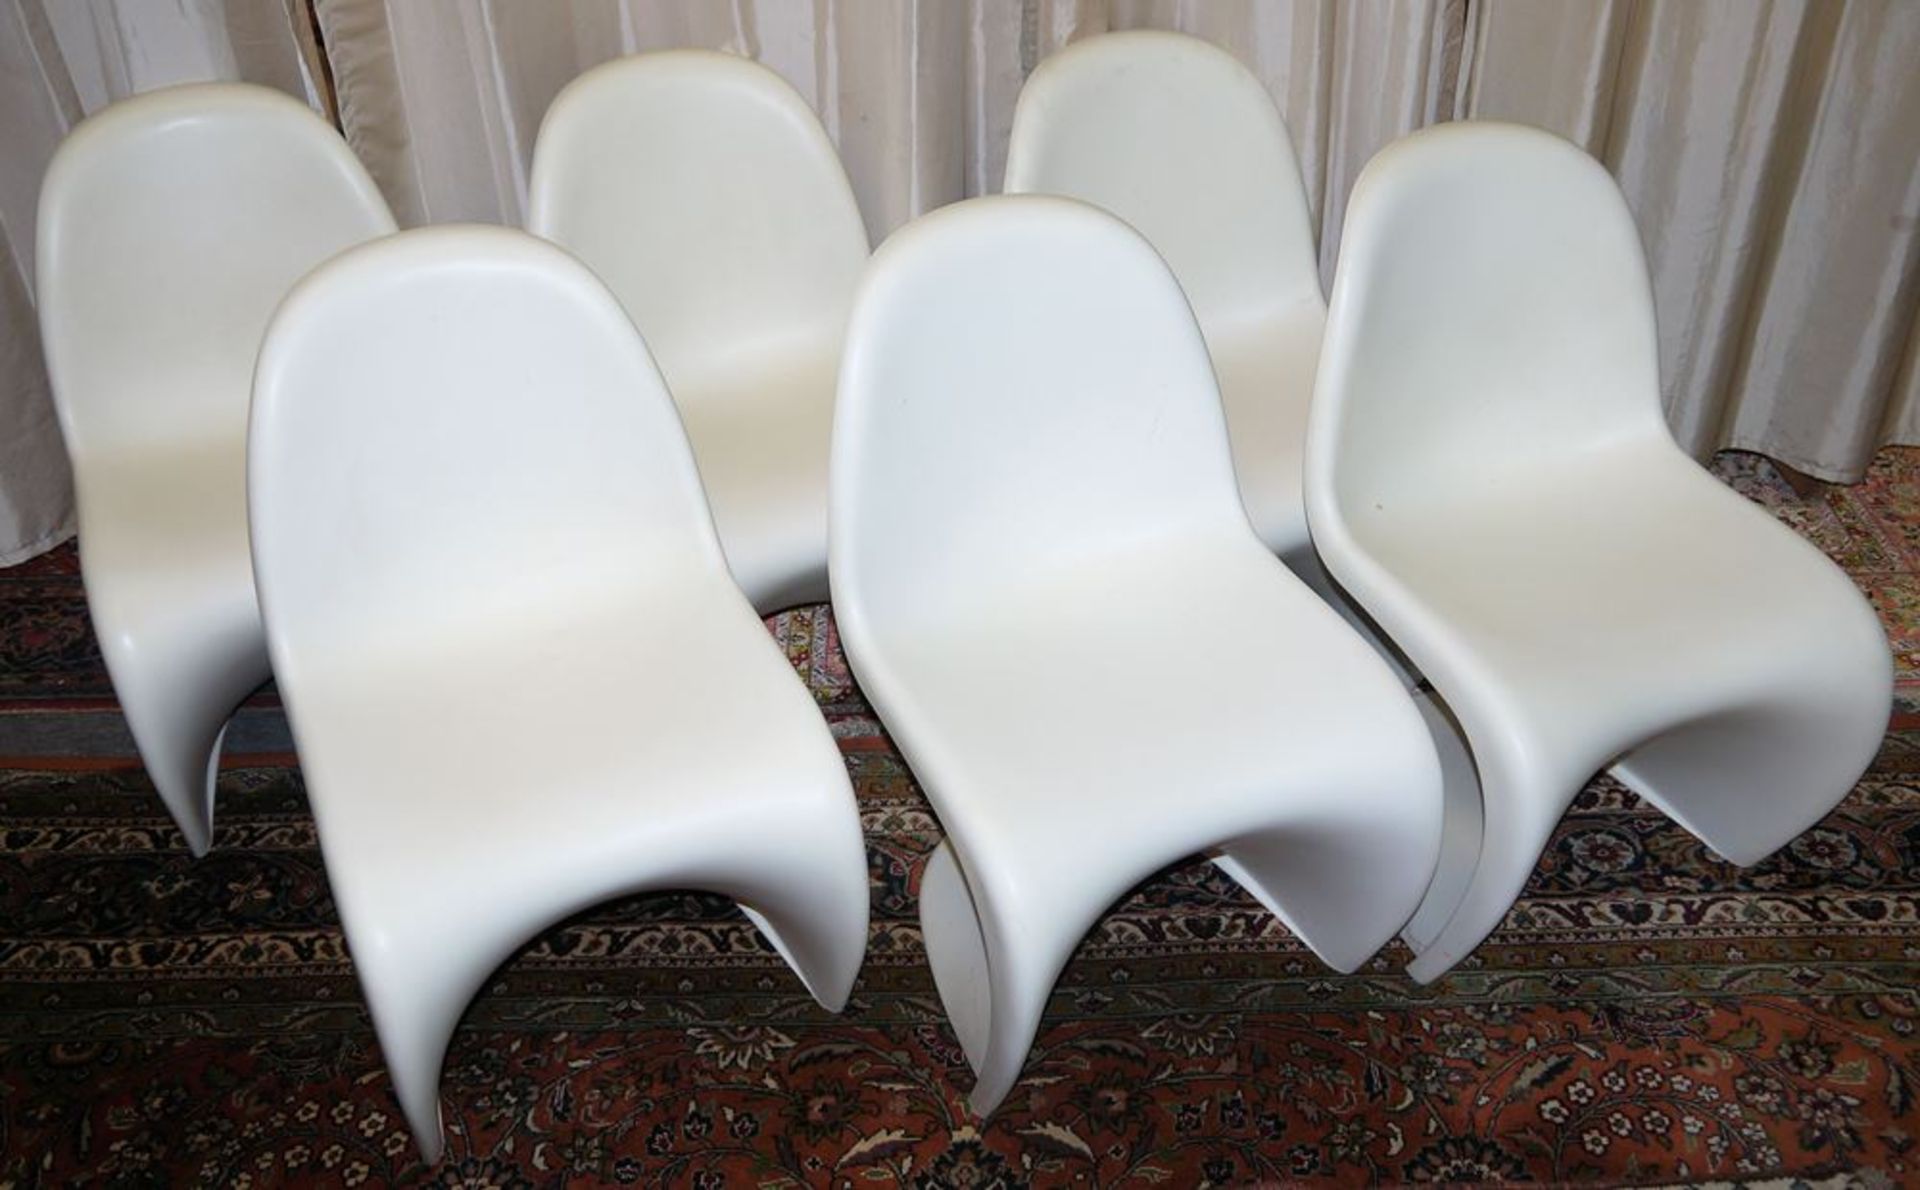 Sechs "Panton-Chairs", weißer Kunststoff, Vitra Design